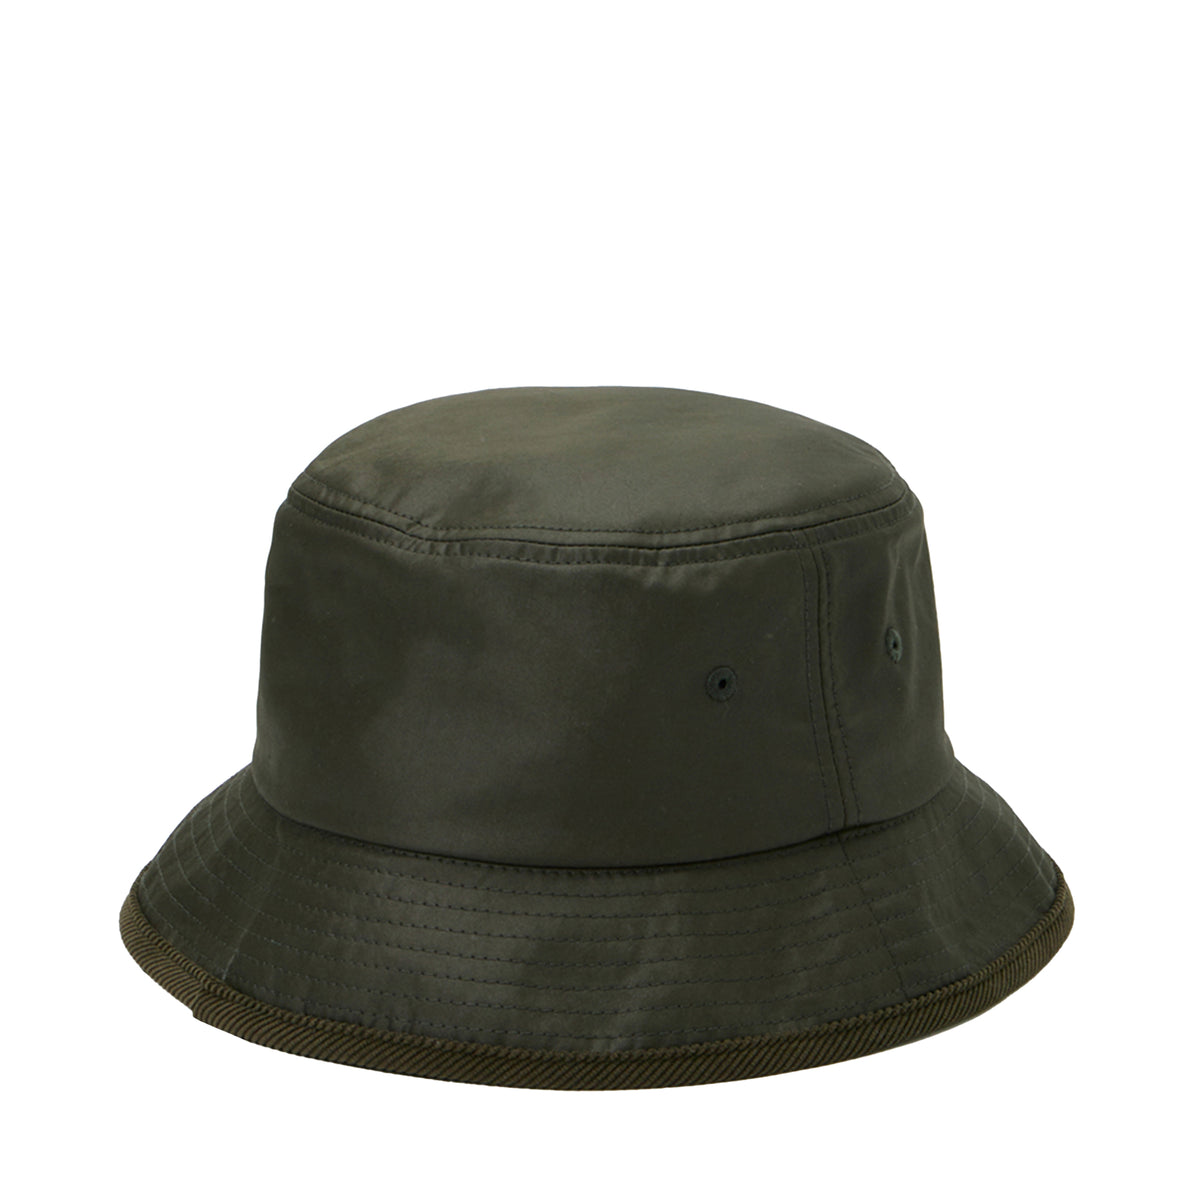 DAIWA PIER39 SS23 TECH HUNTER'S BUCKET HAT / D OLV -NUBIAN